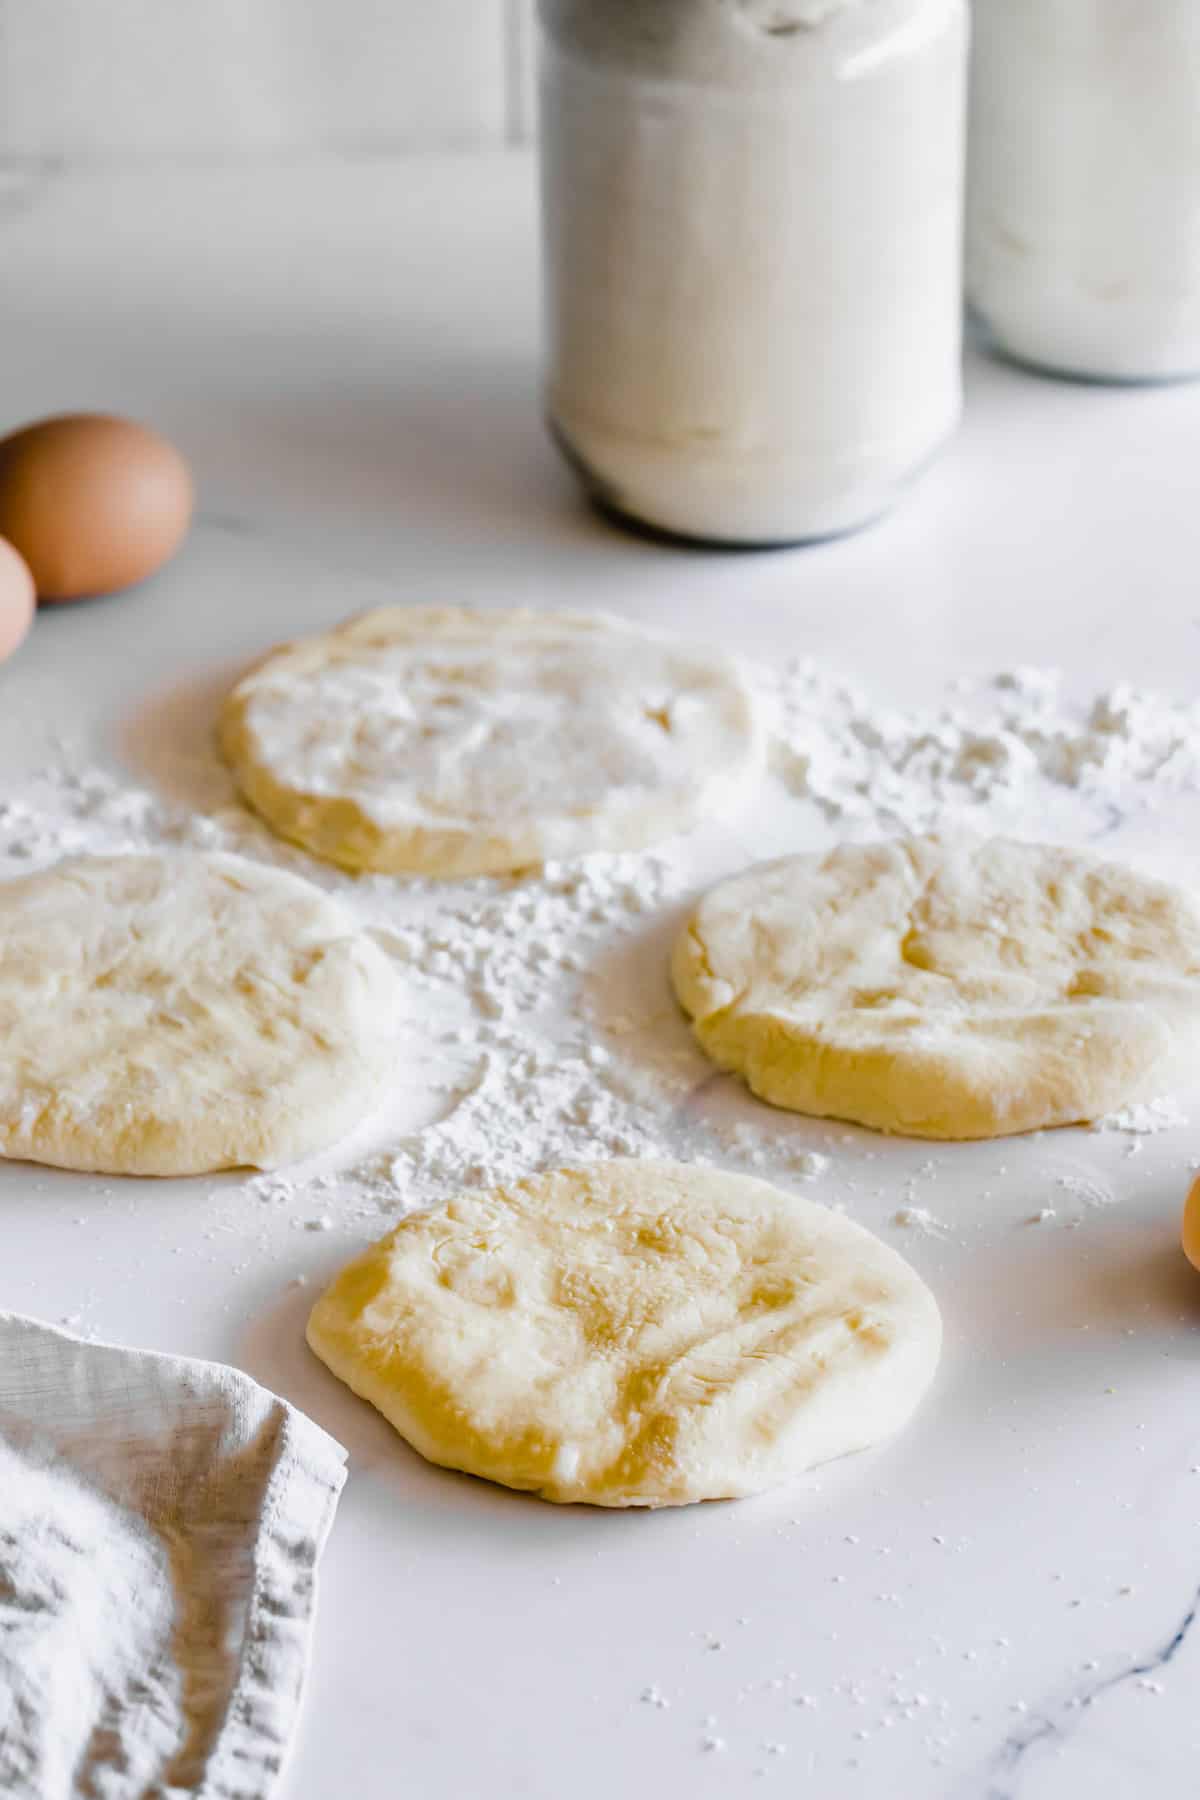 Four Discs of Gluten Free Pita Dough on a Well-Floured White Countertop